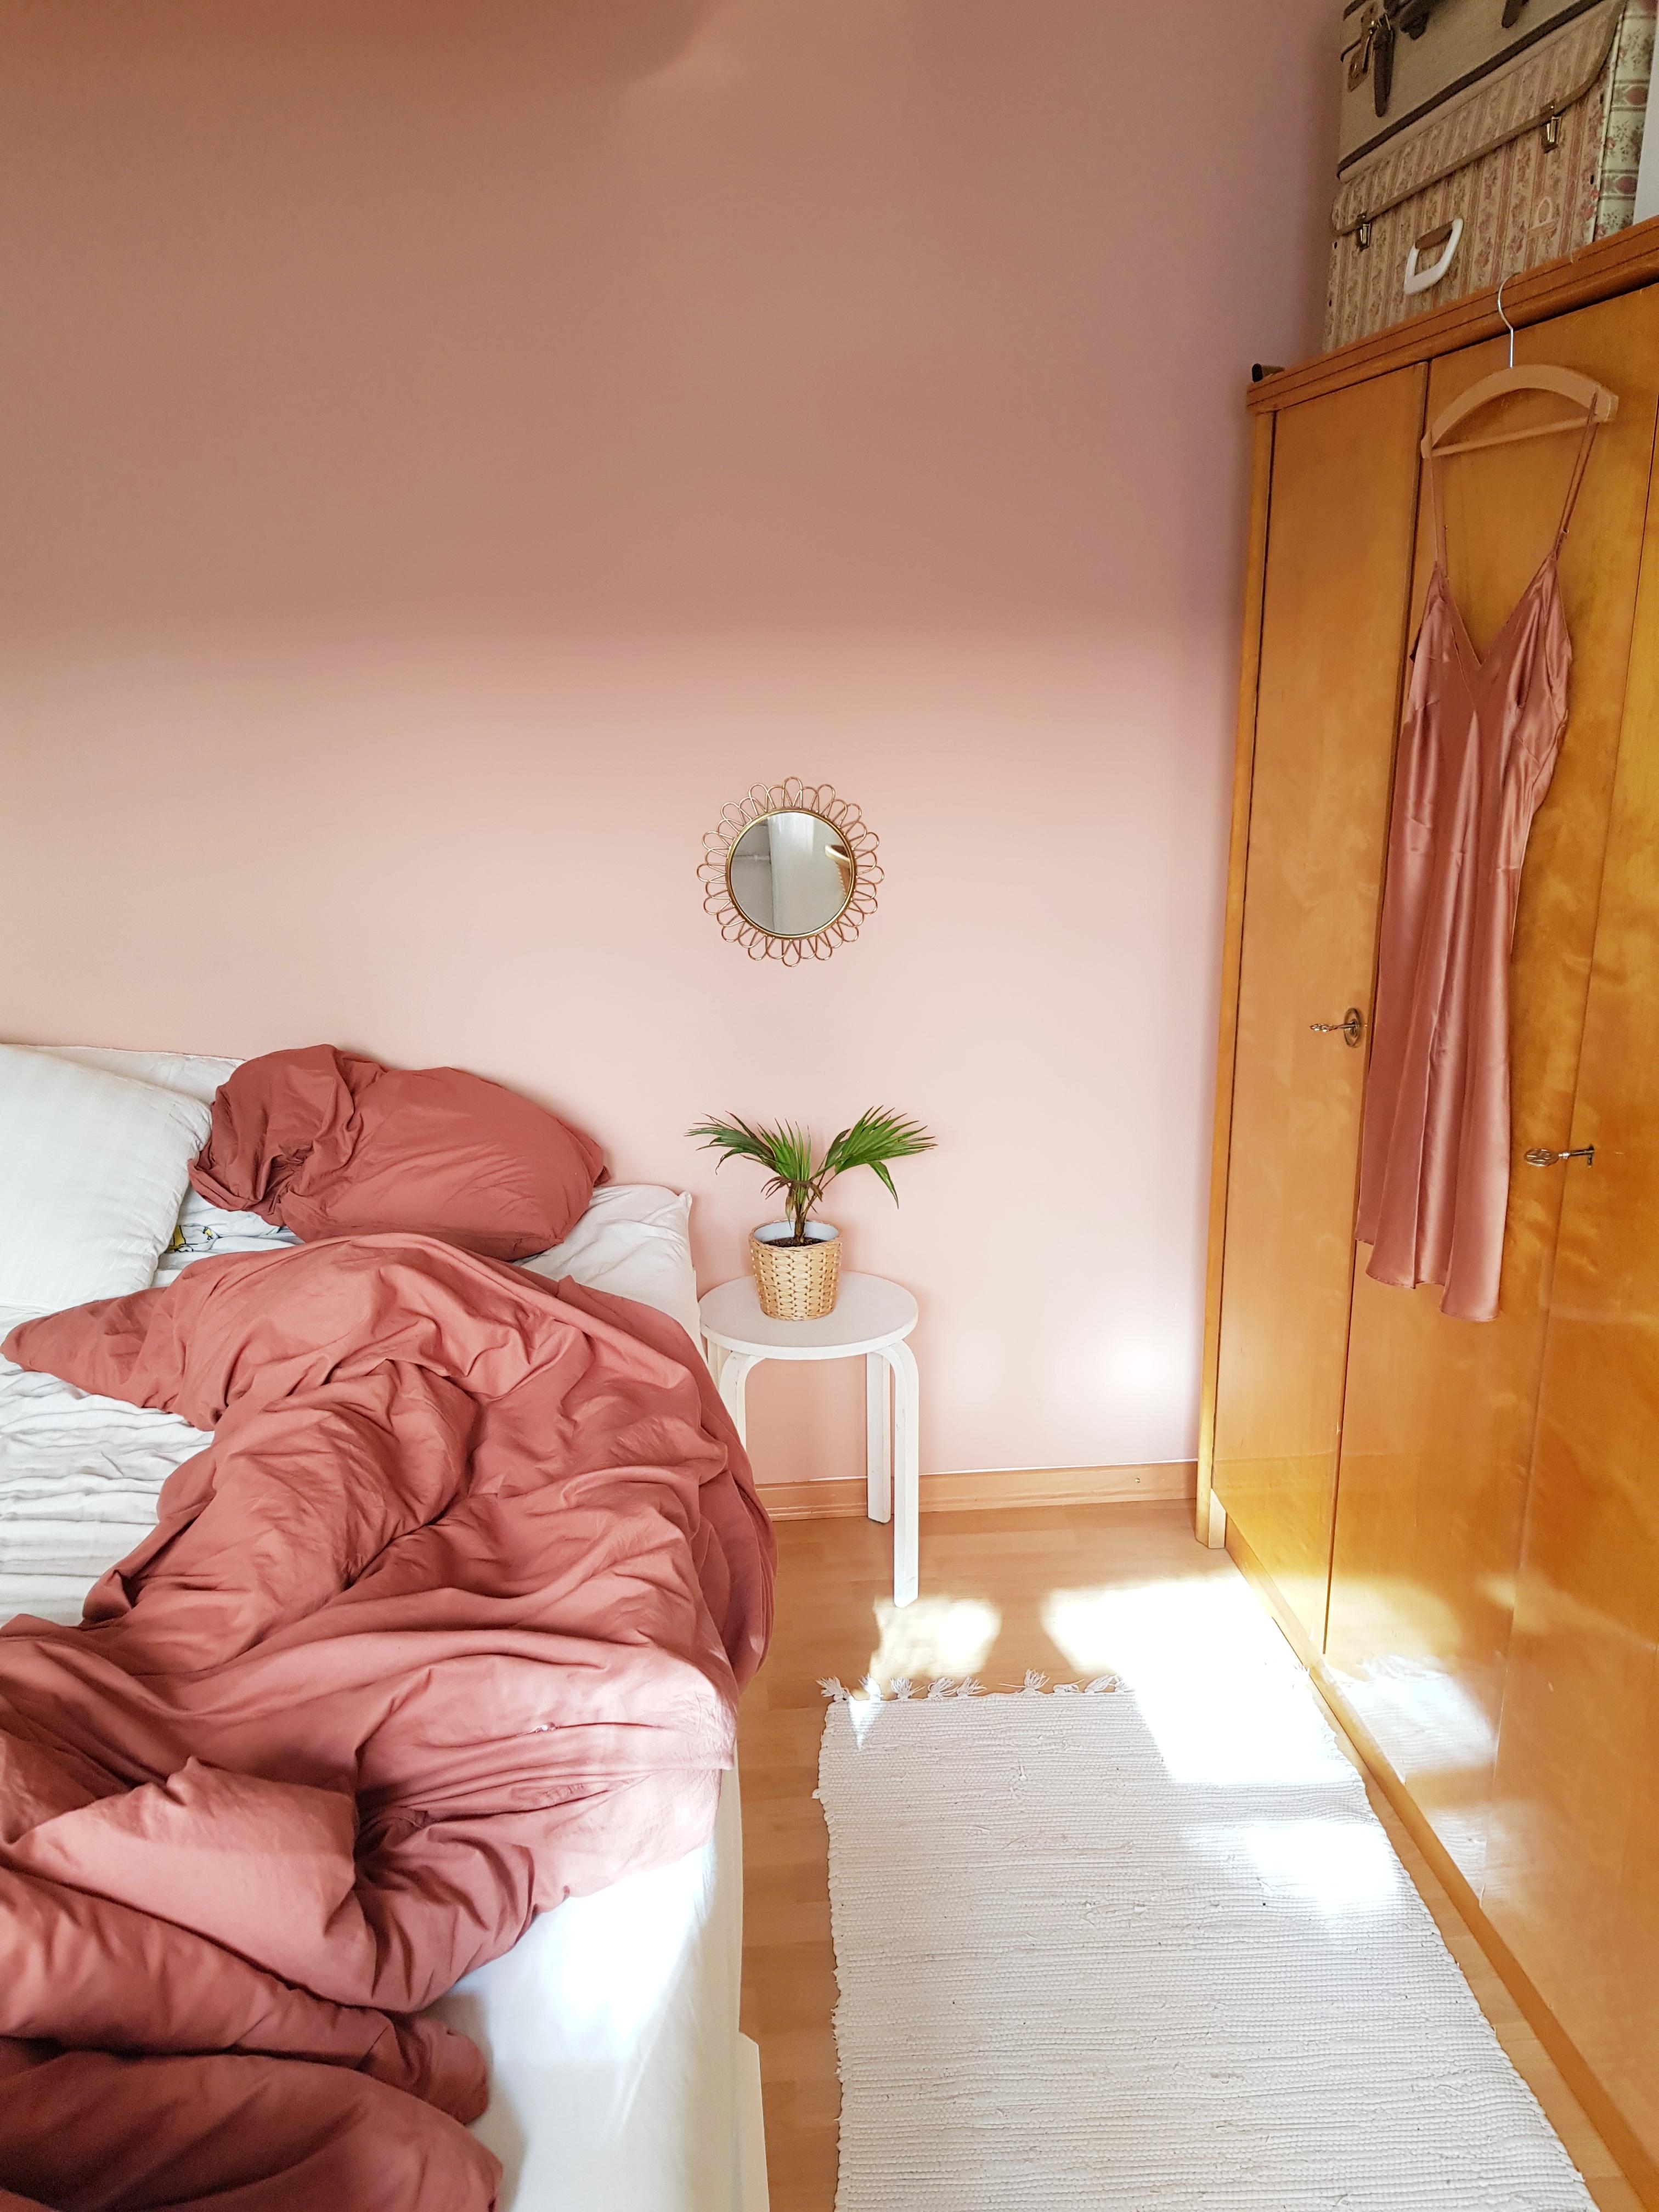 Hallo ihr Lieben, ich sage hallo mit einem ersten Foto aus dem Schlafzimmer - frisch wachgeküsst von der Sonne. #neuhier